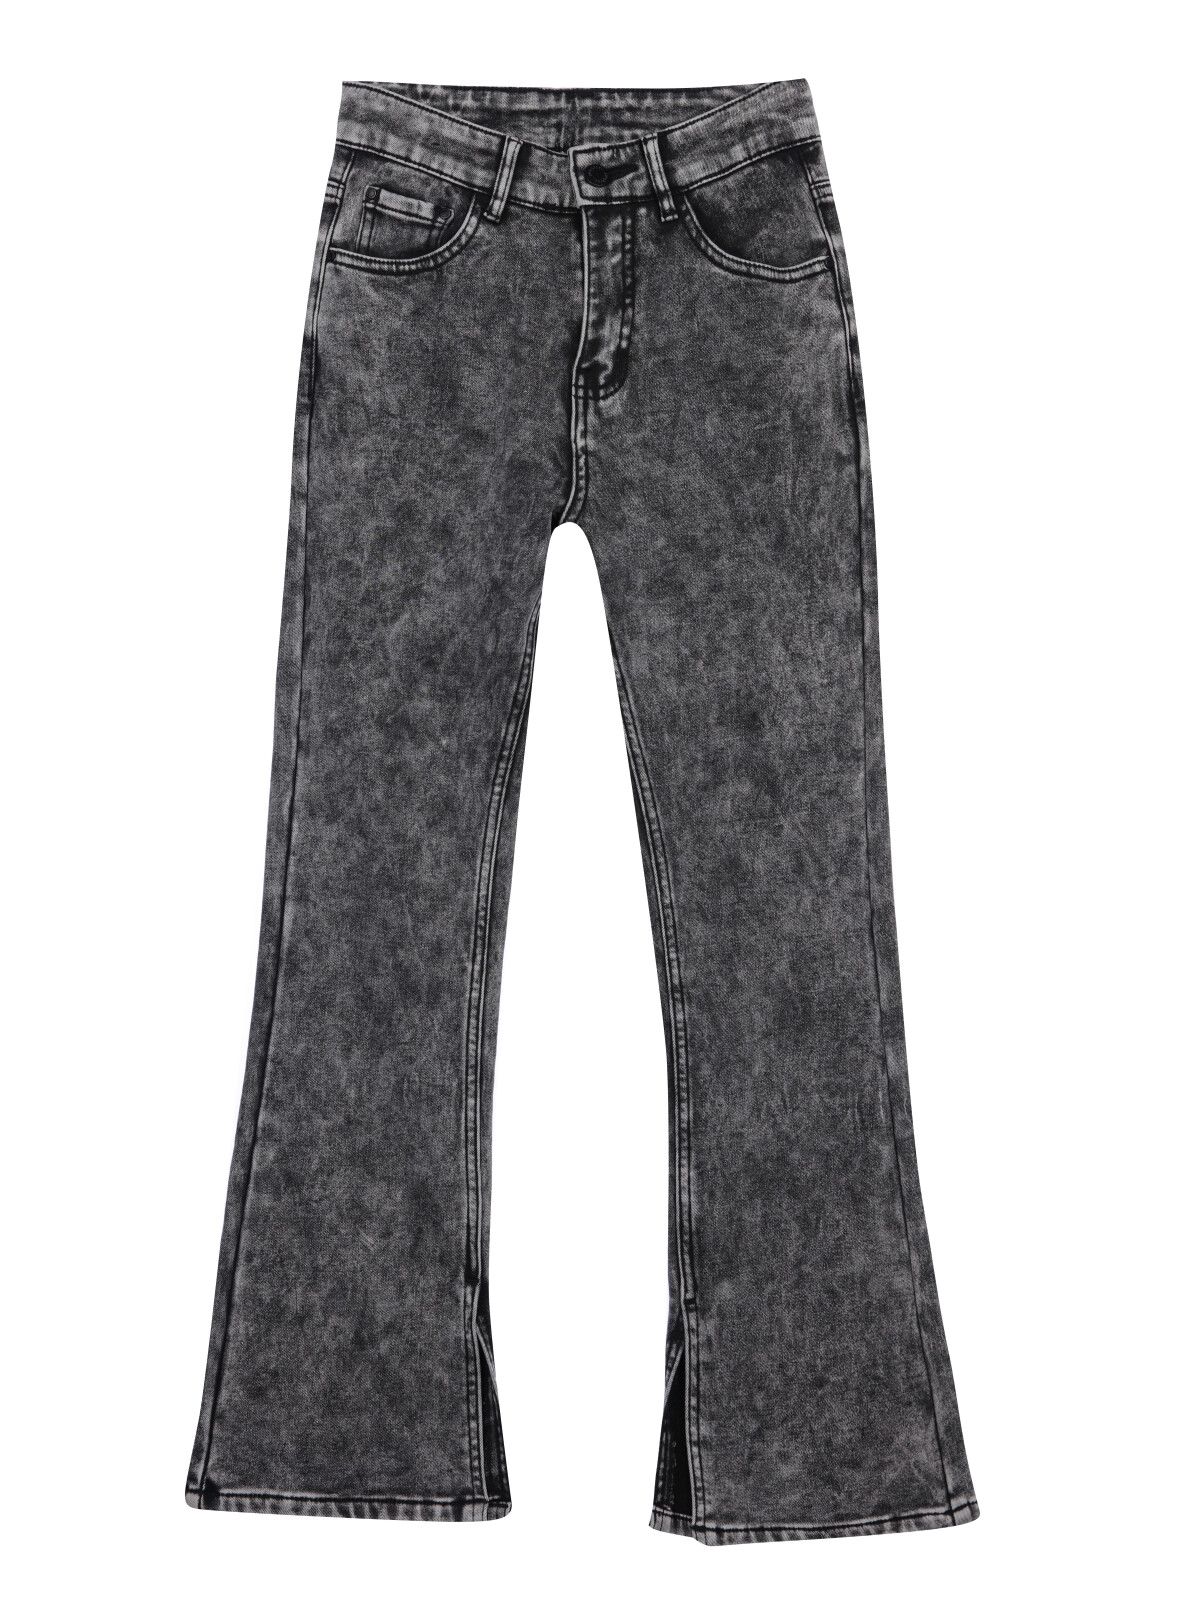 Брюки текстильные джинсовые утепленные флисом для девочек PlayToday, черный, 140